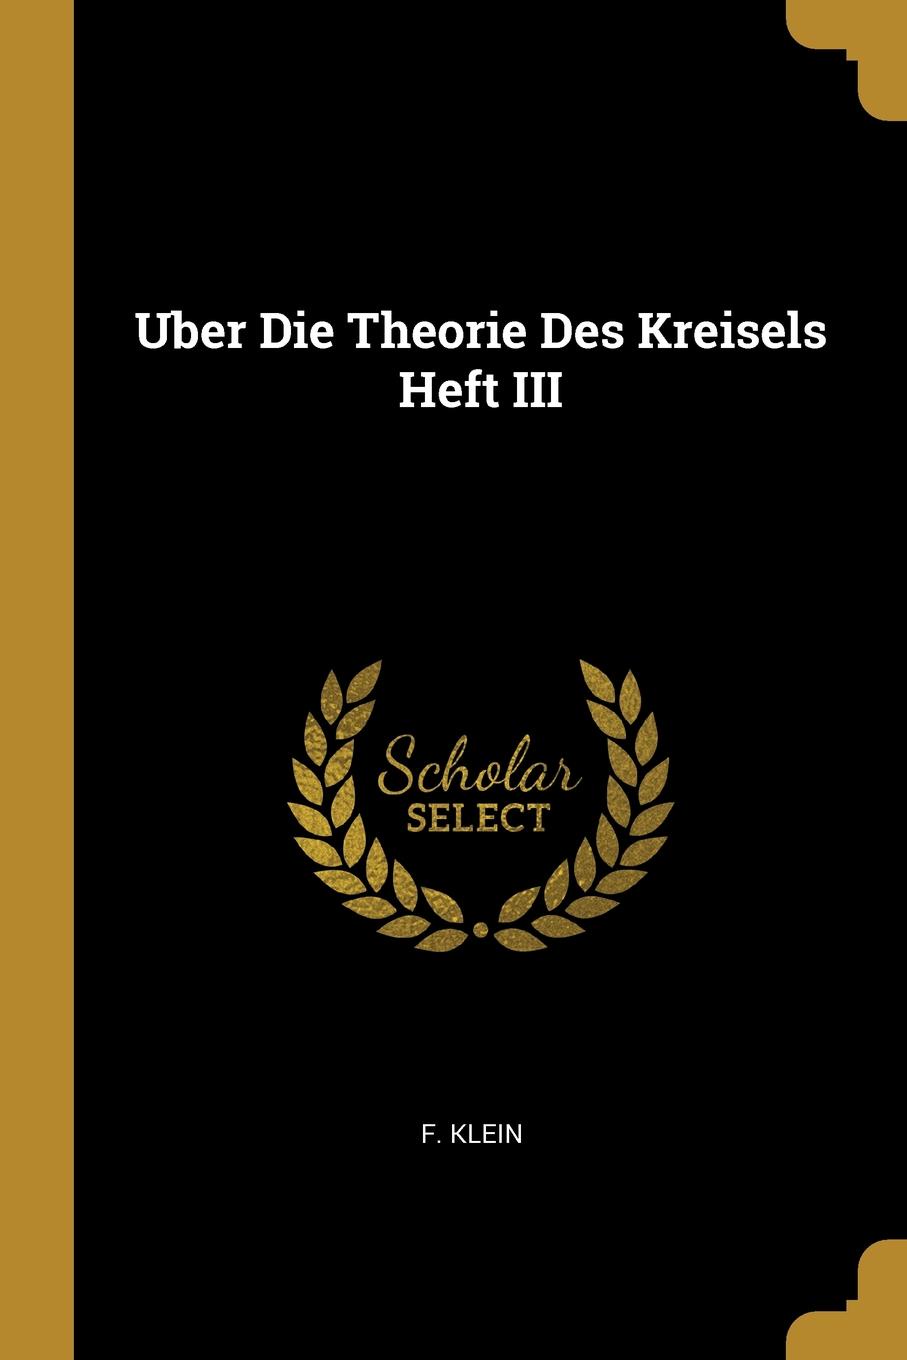 Uber Die Theorie Des Kreisels Heft III